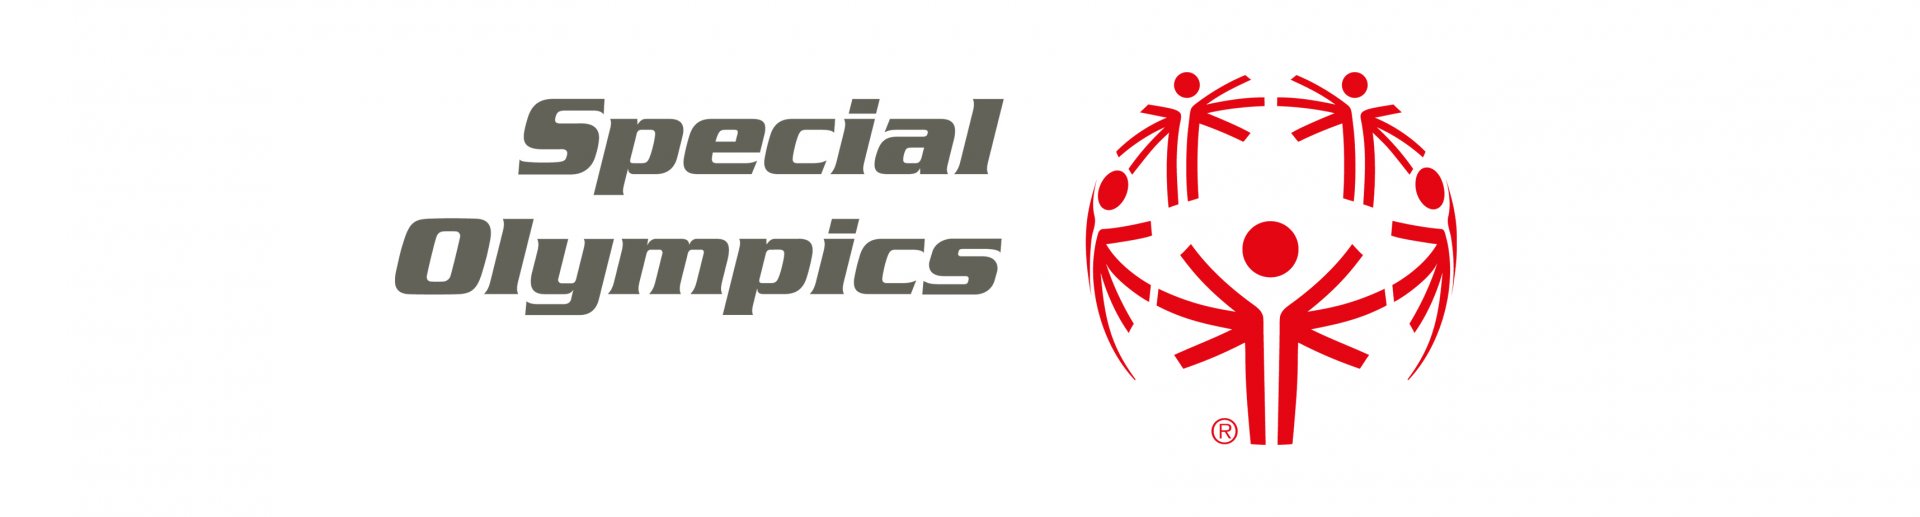 logo special olympics